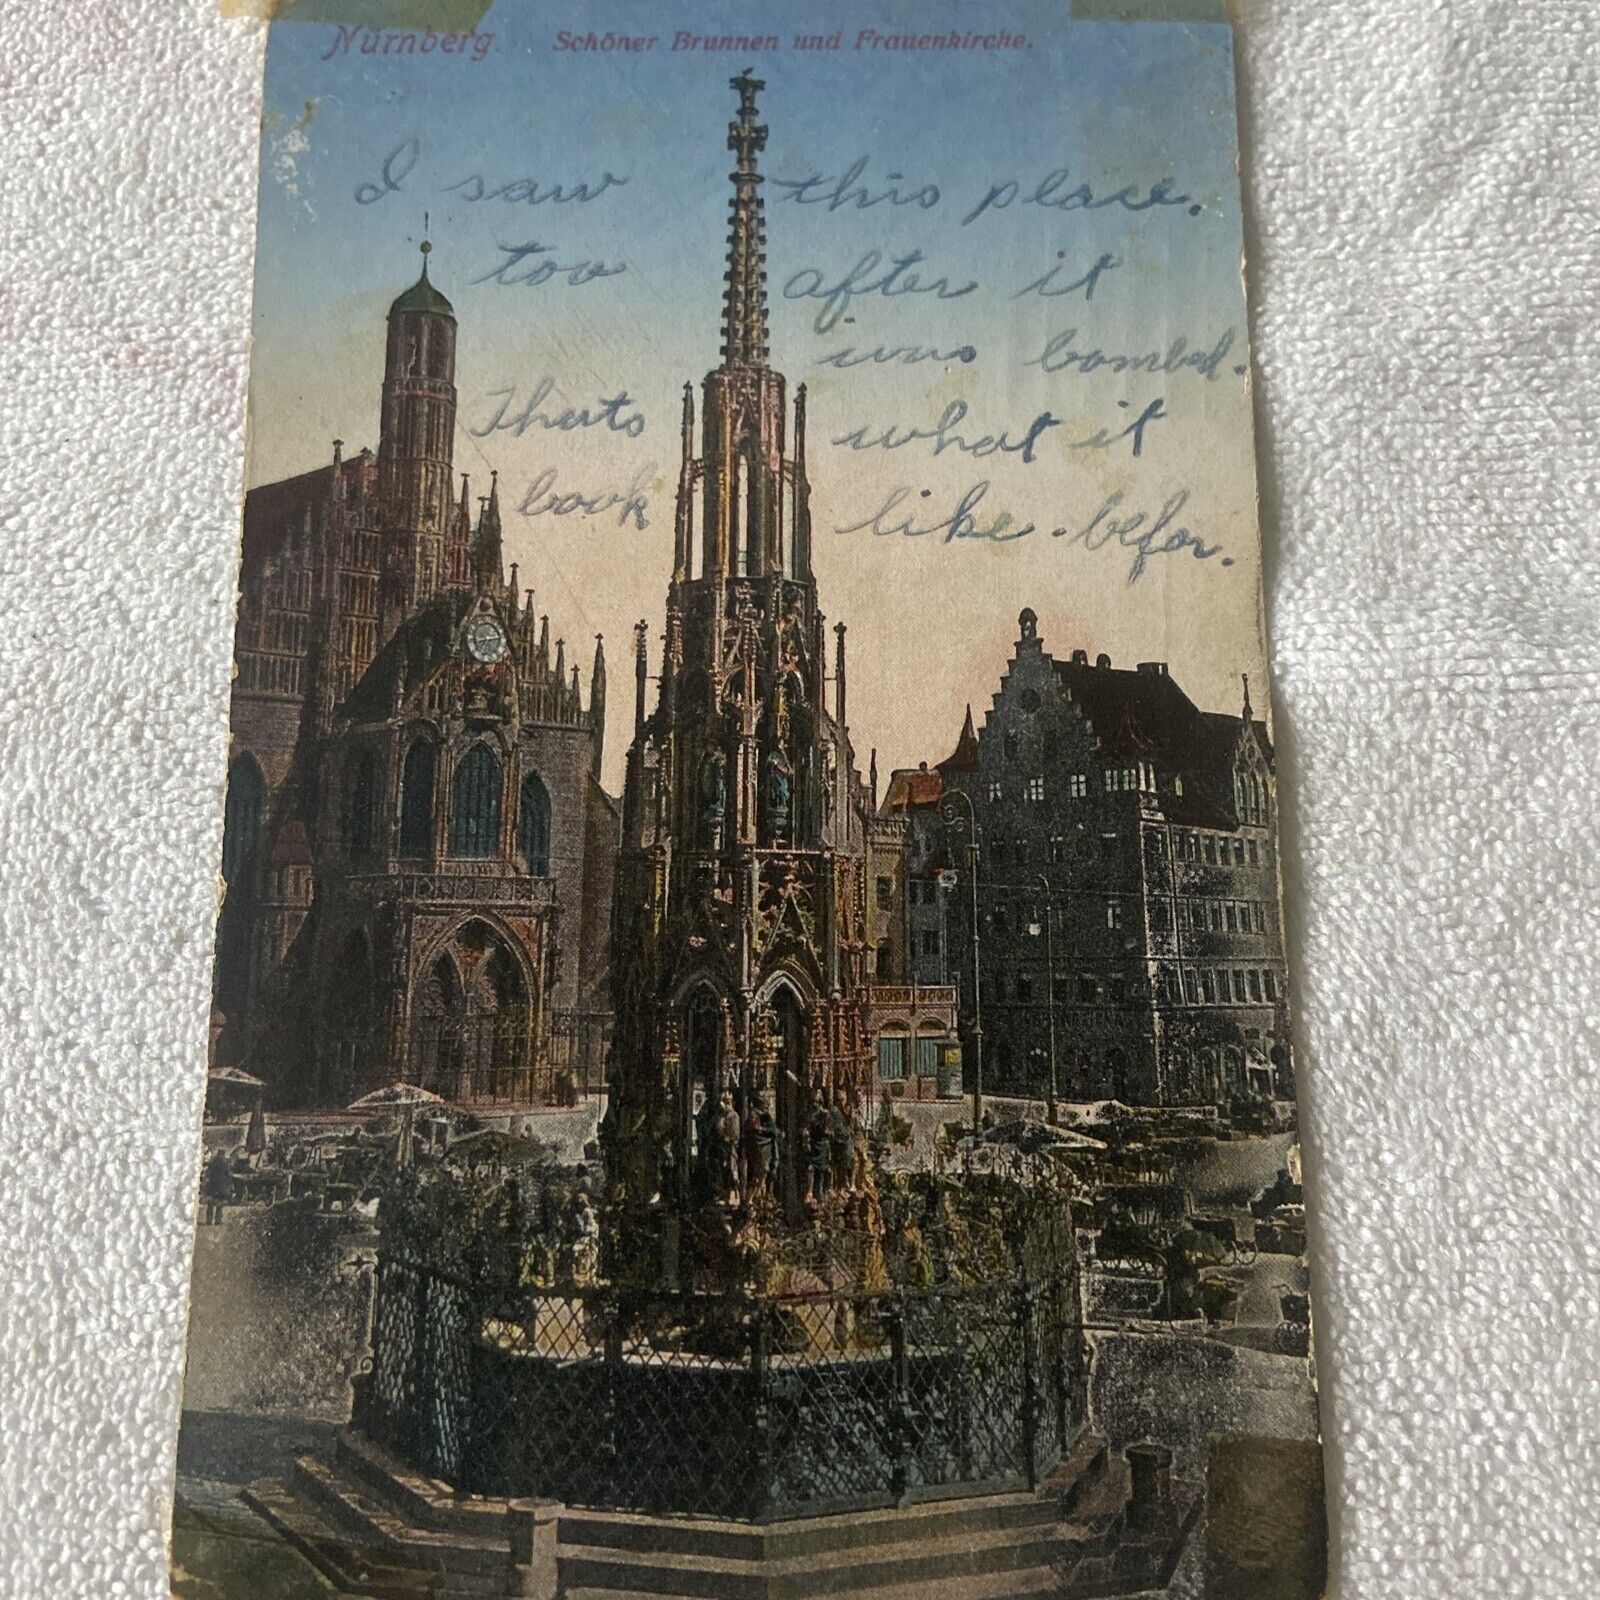 Nurnberg, Germany- Schoner Brunnen und Frauenkirche Vintage Postcard